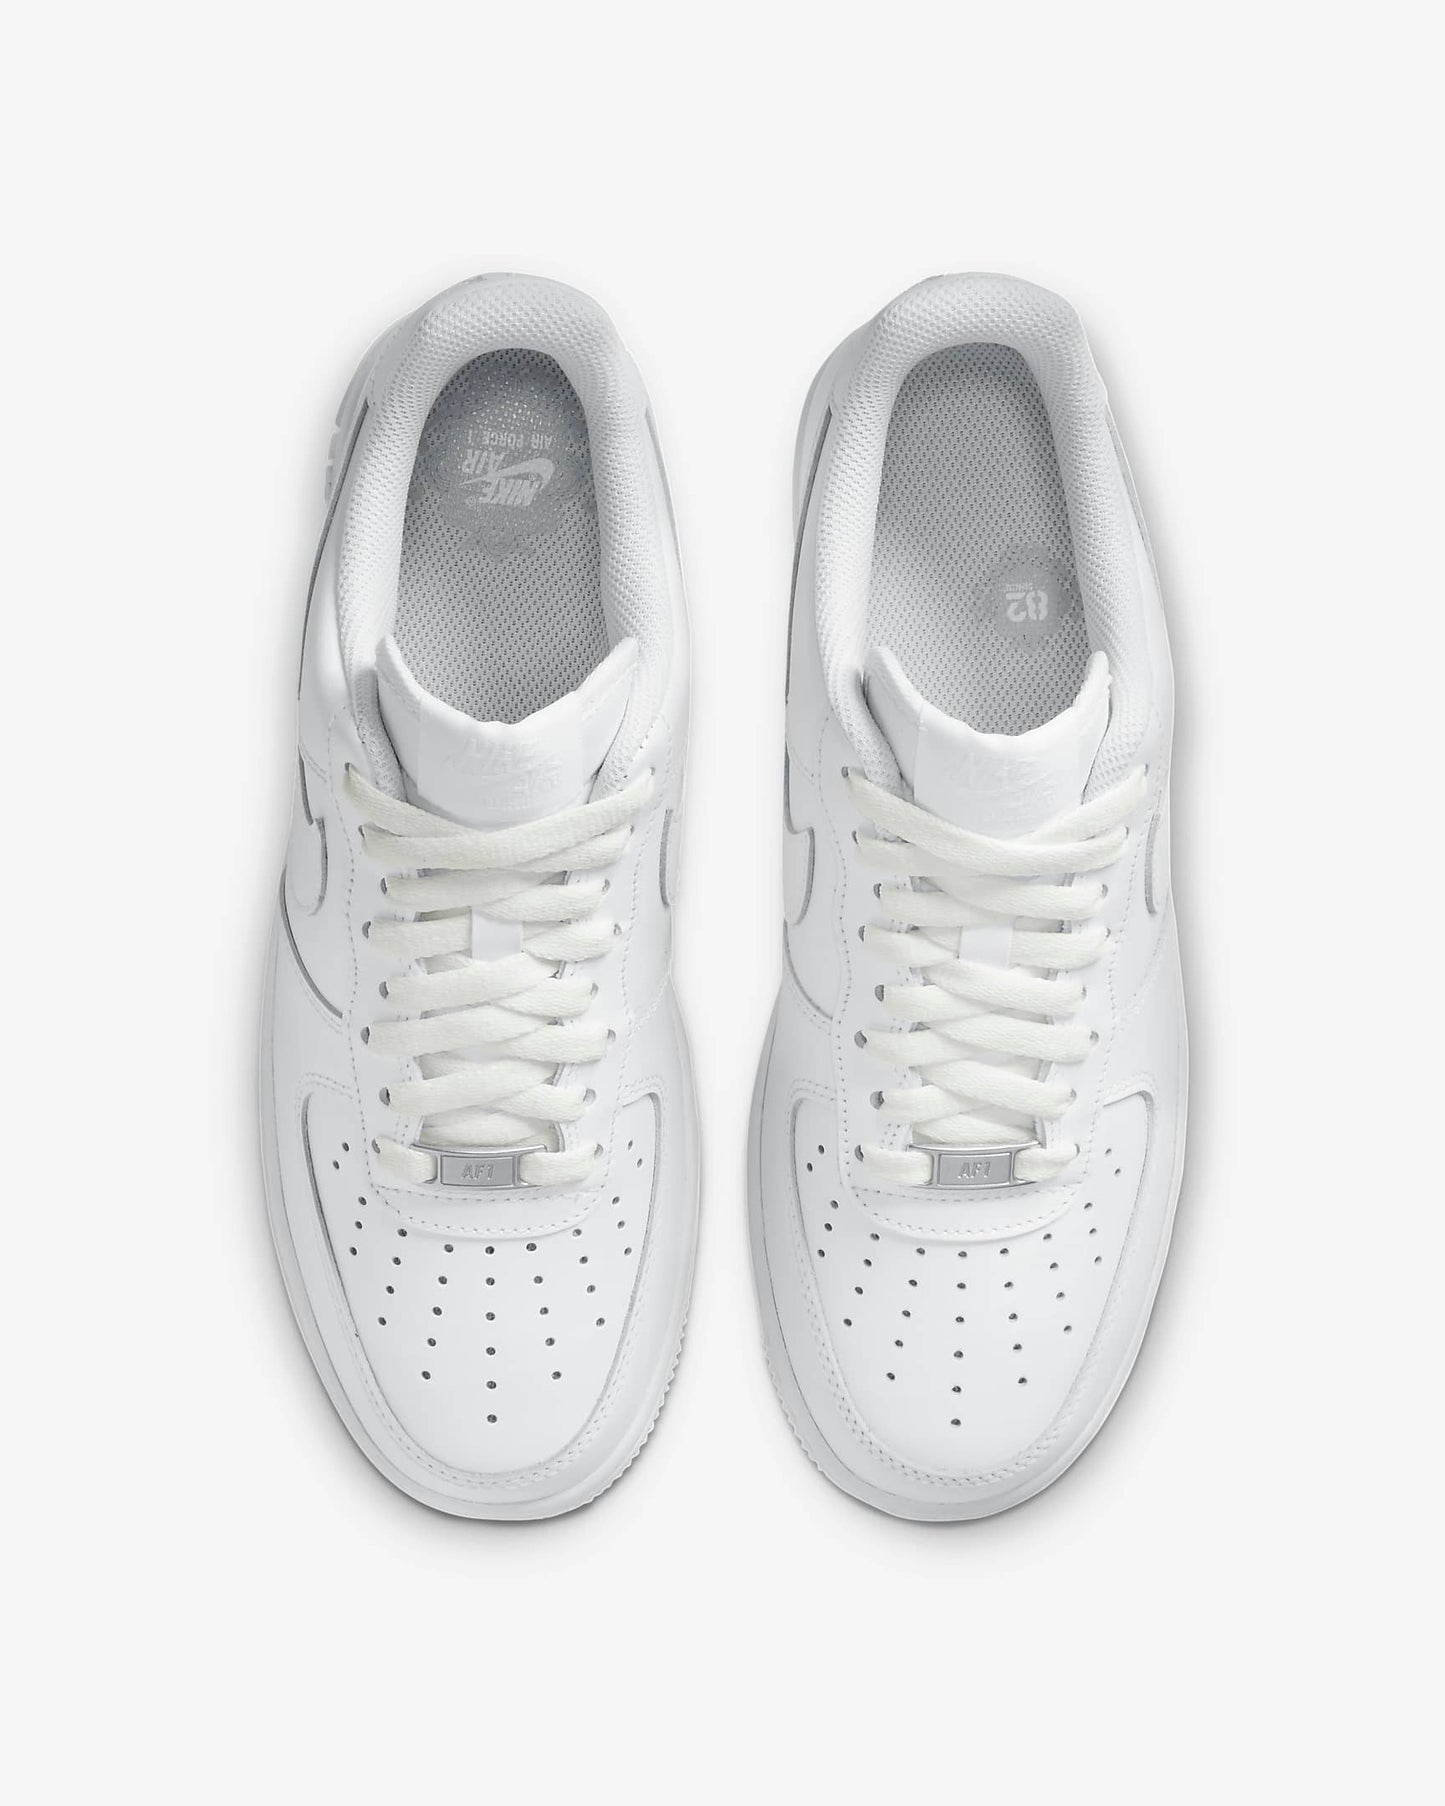 Nike Air Force 1 '07 Women's Shoes, White/White/White/White